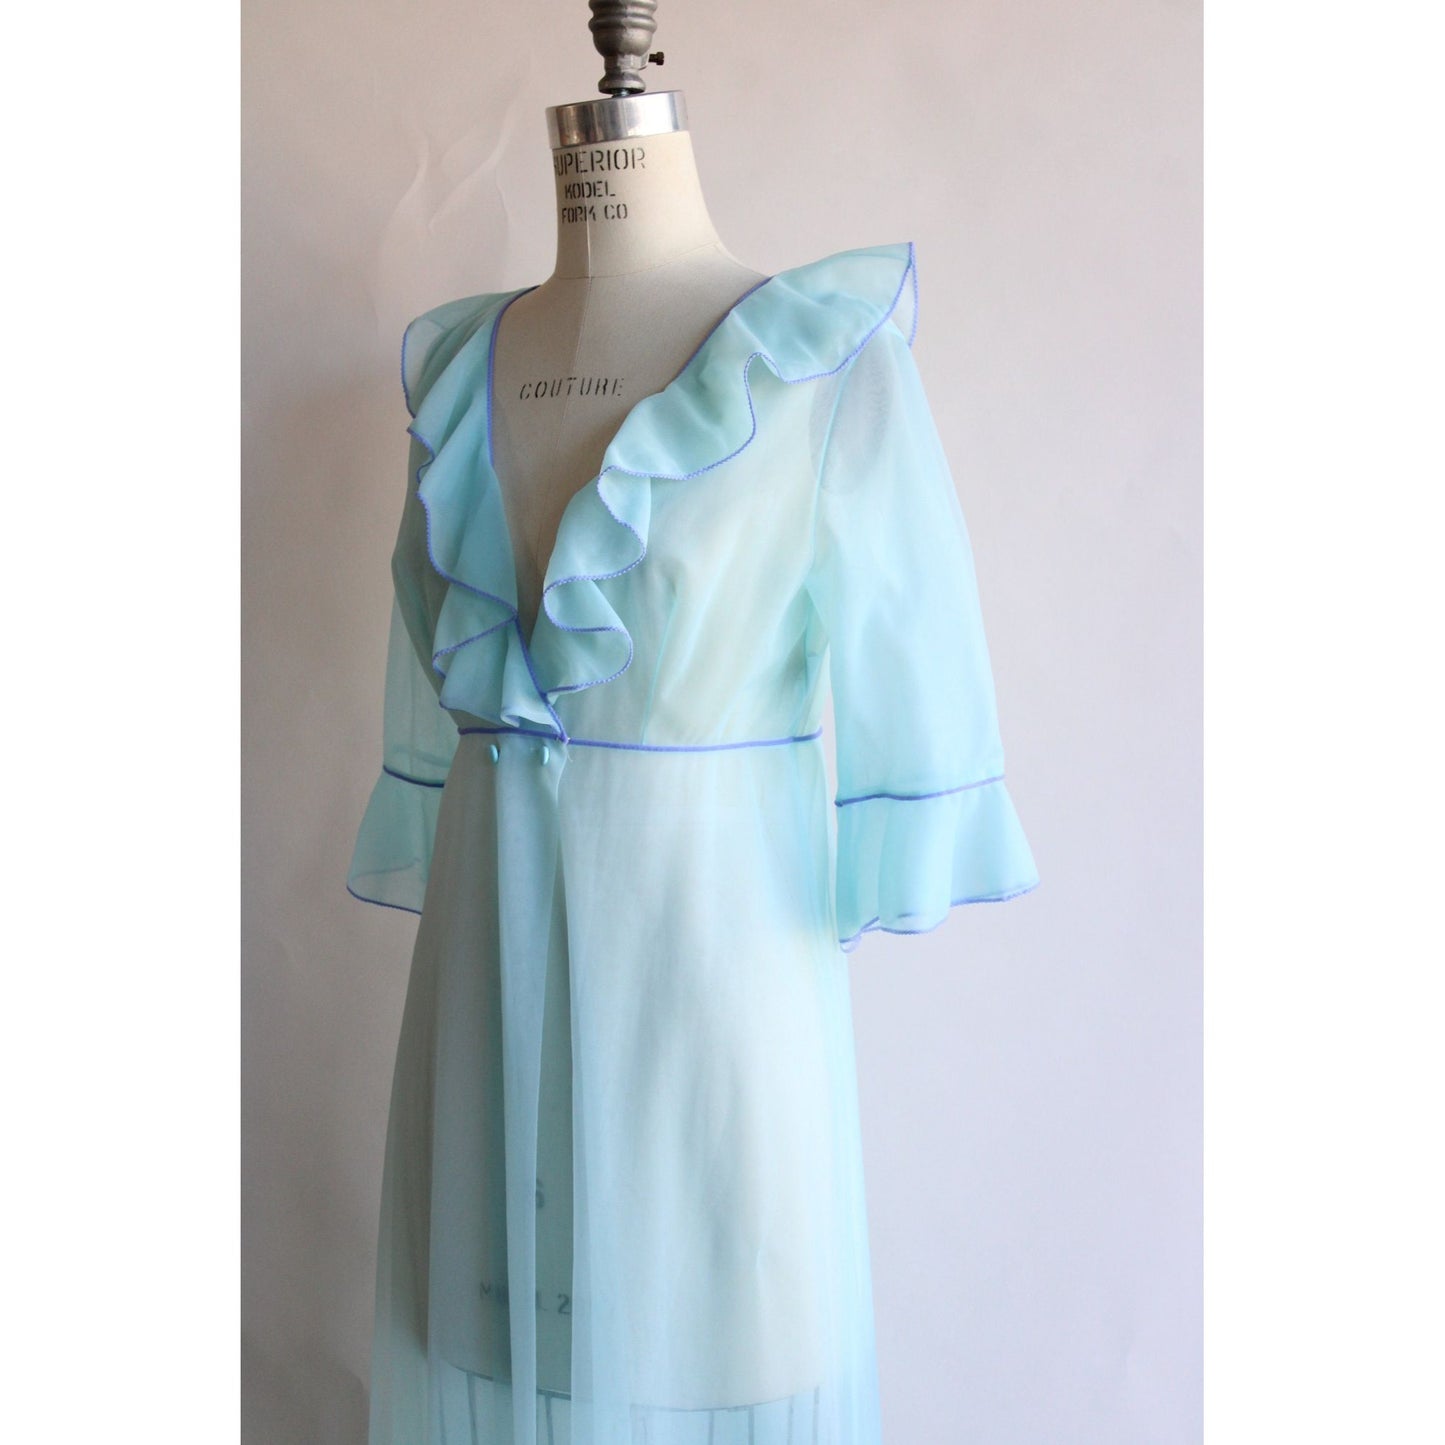 Vintage 1960s Blue Peignoir Robe by Gossard Artemis